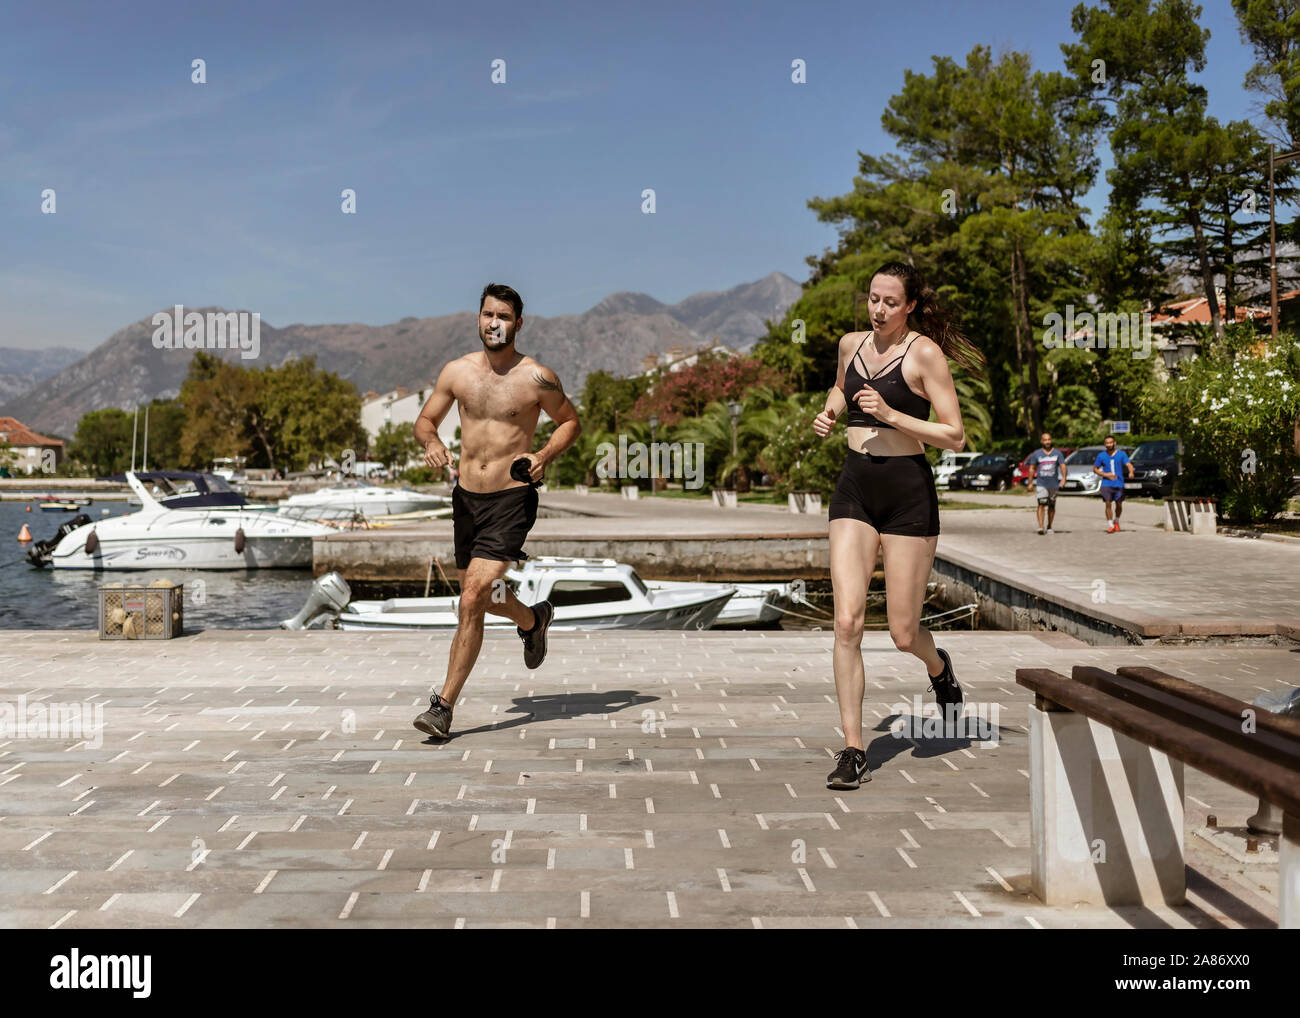 Dobrota, Montenegro, Sep 16, 2019: un paio di jogging sul lungomare Foto Stock